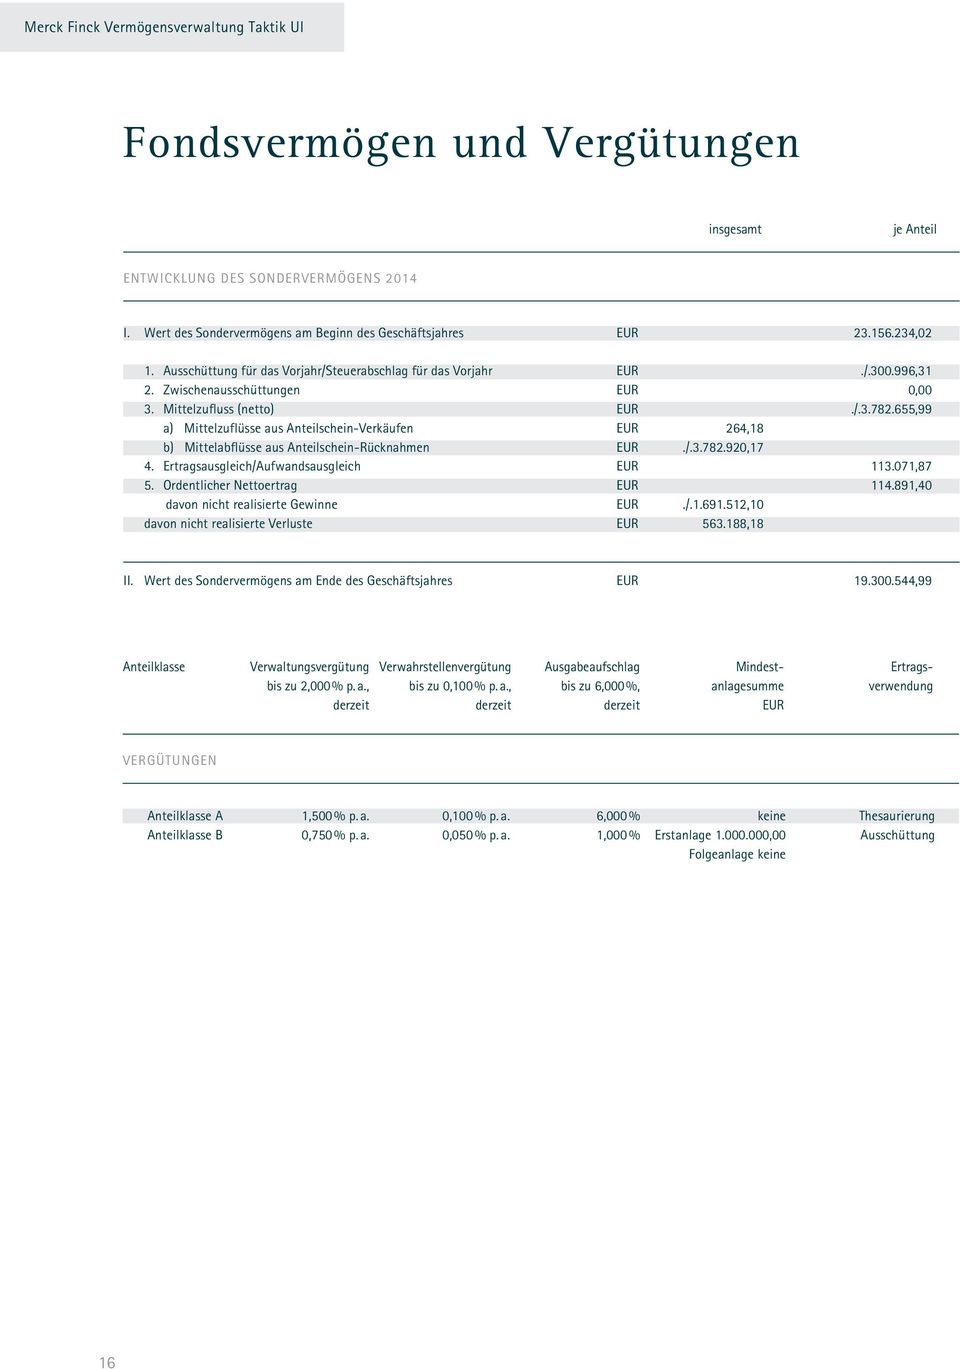 655,99 a) Mittelzuflüsse aus Anteilschein-Verkäufen EUR 264,18 b) Mittelabflüsse aus Anteilschein-Rücknahmen EUR./.3.782.920,17 4. Ertragsausgleich/Aufwandsausgleich EUR 113.071,87 5.